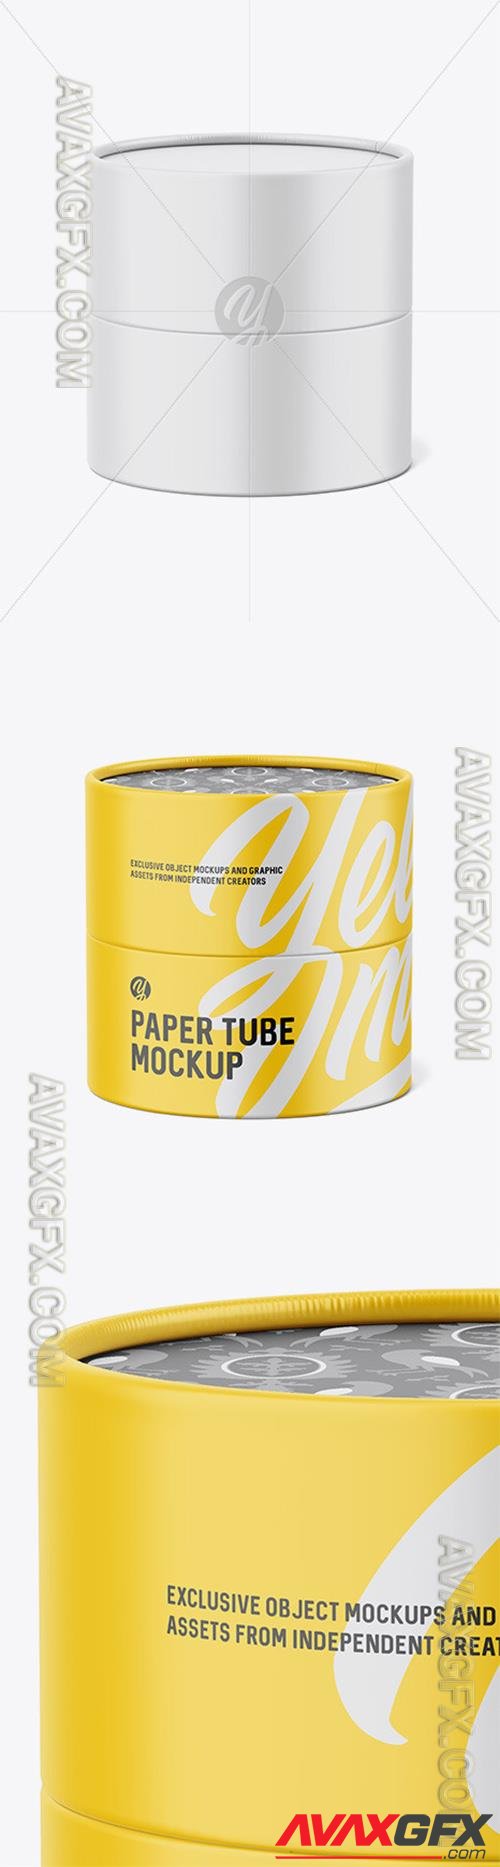 Paper Tube Mockup 87232 TIF